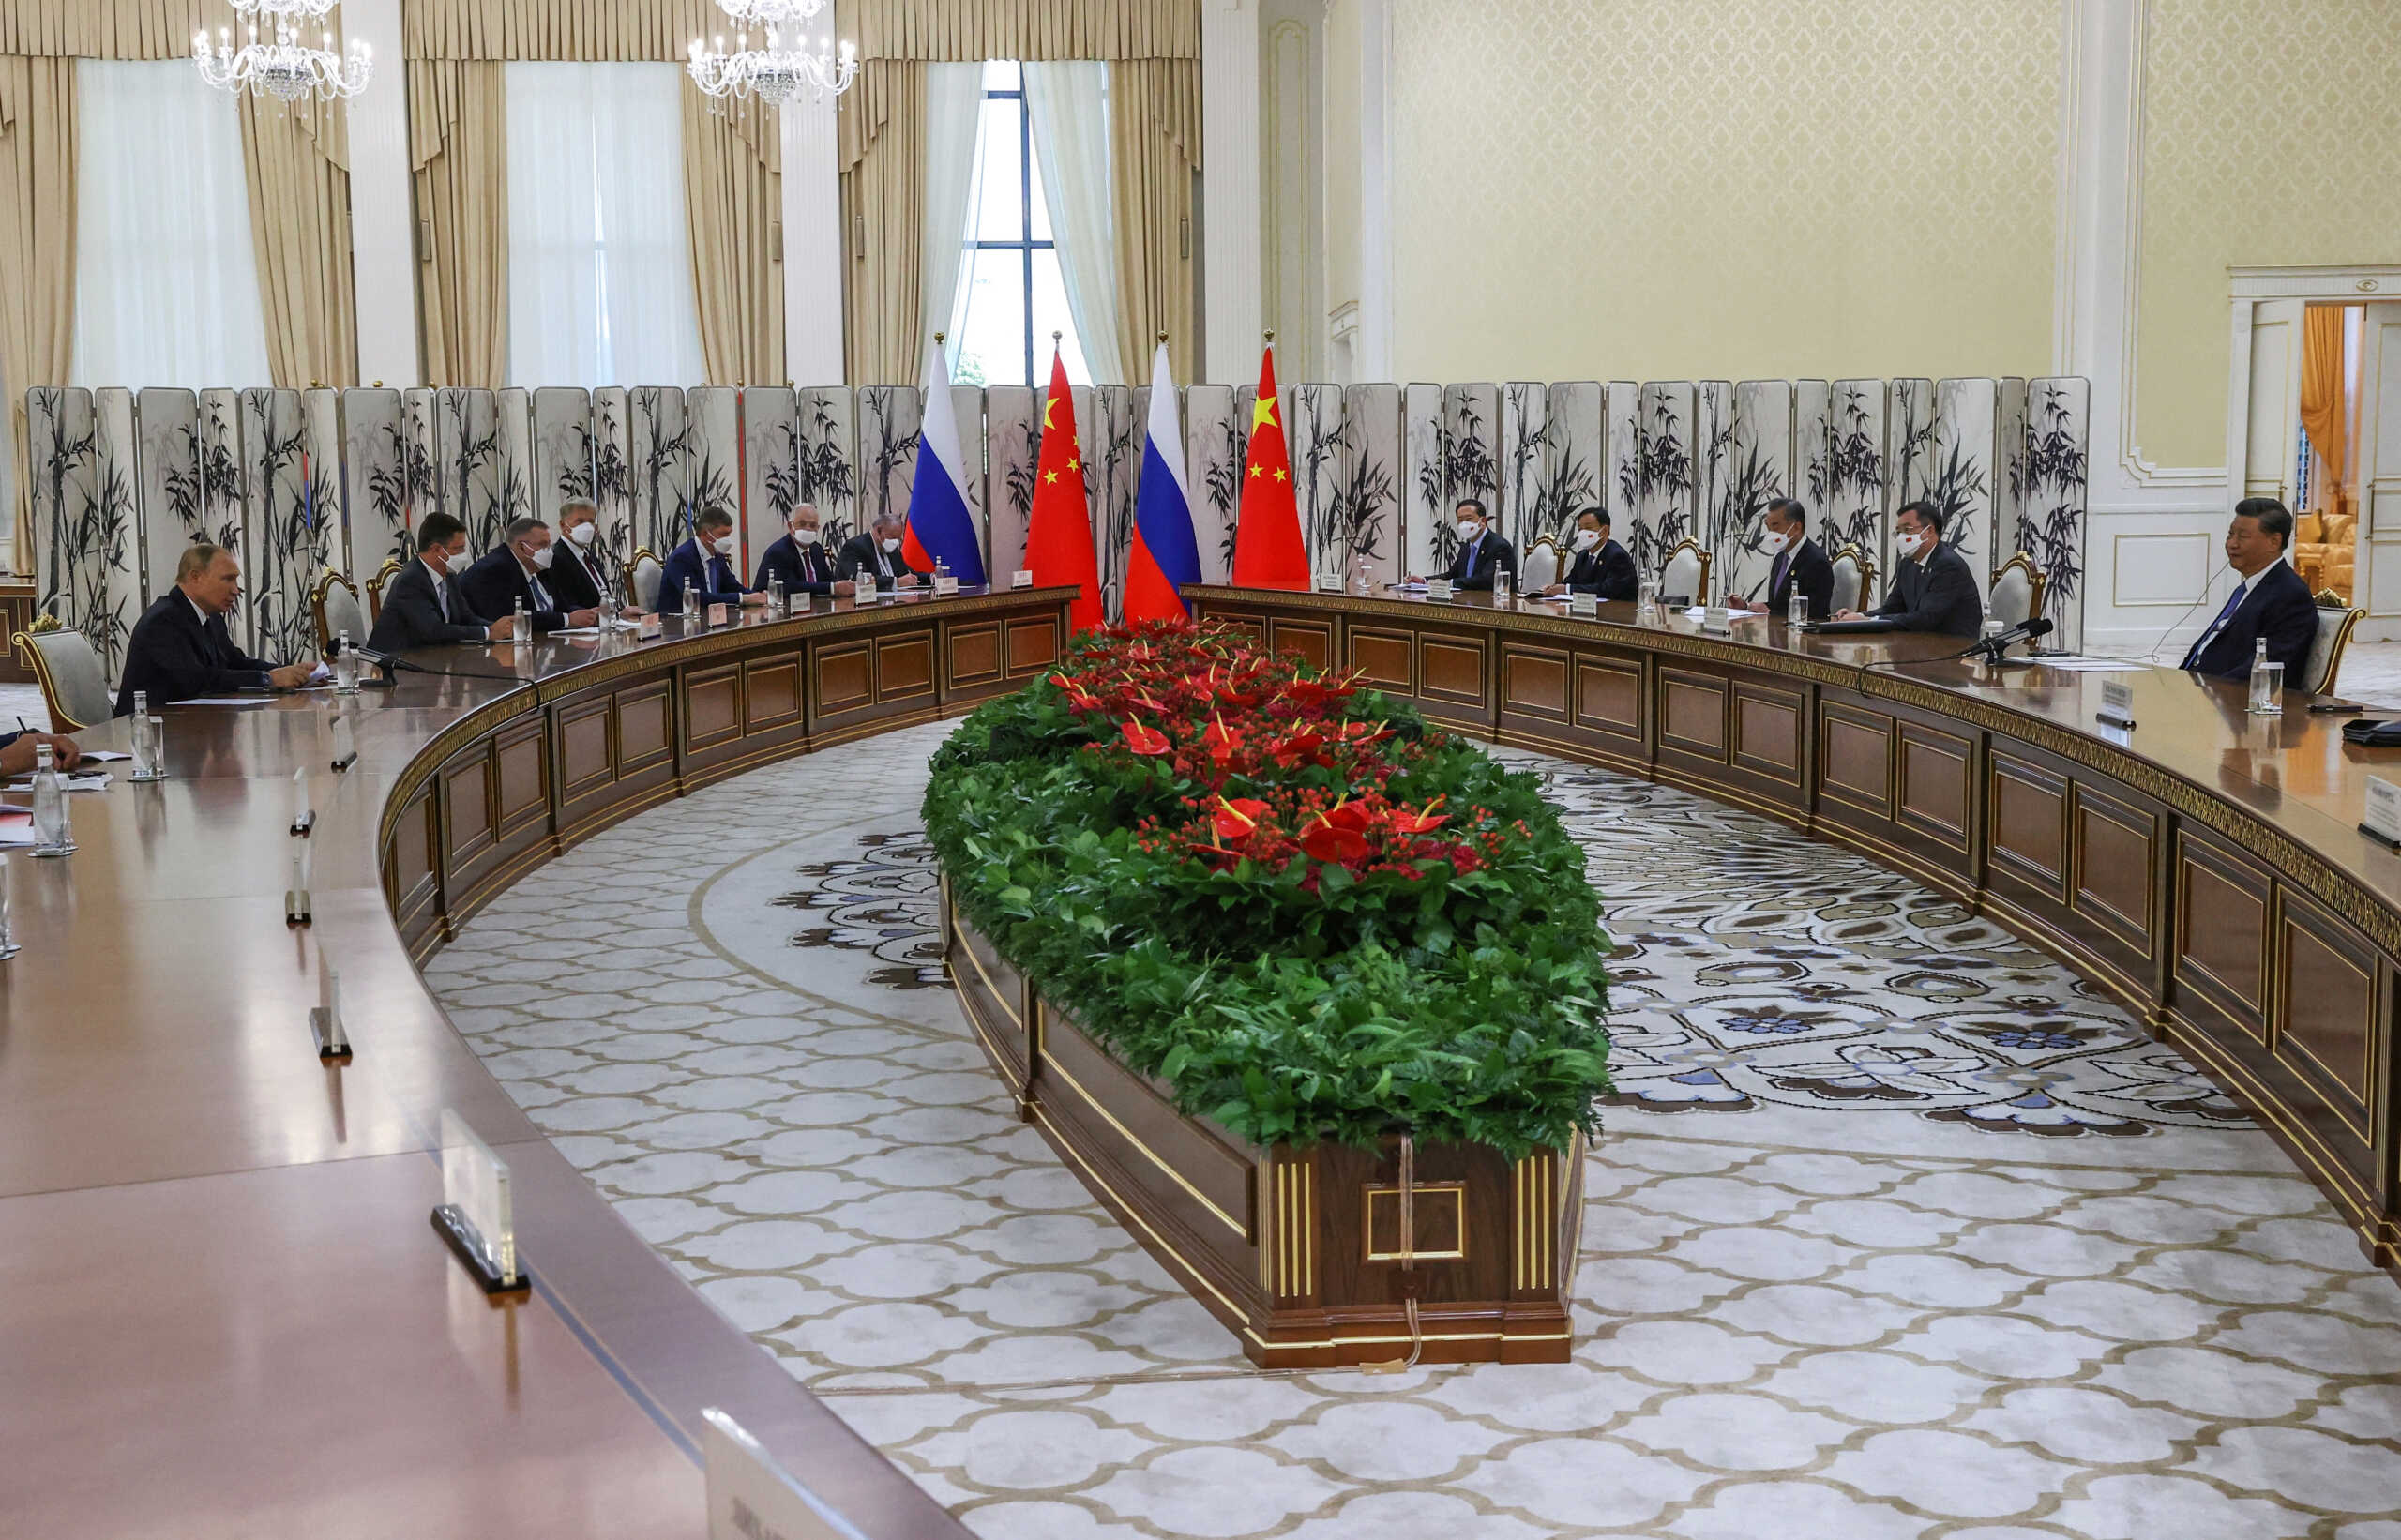 Σι Τζινπίνγκ σε Πούτιν: Η Κίνα θα αναλάβει τις ευθύνες της ως μεγάλης δύναμης σε συνεργασία με τη Ρωσία